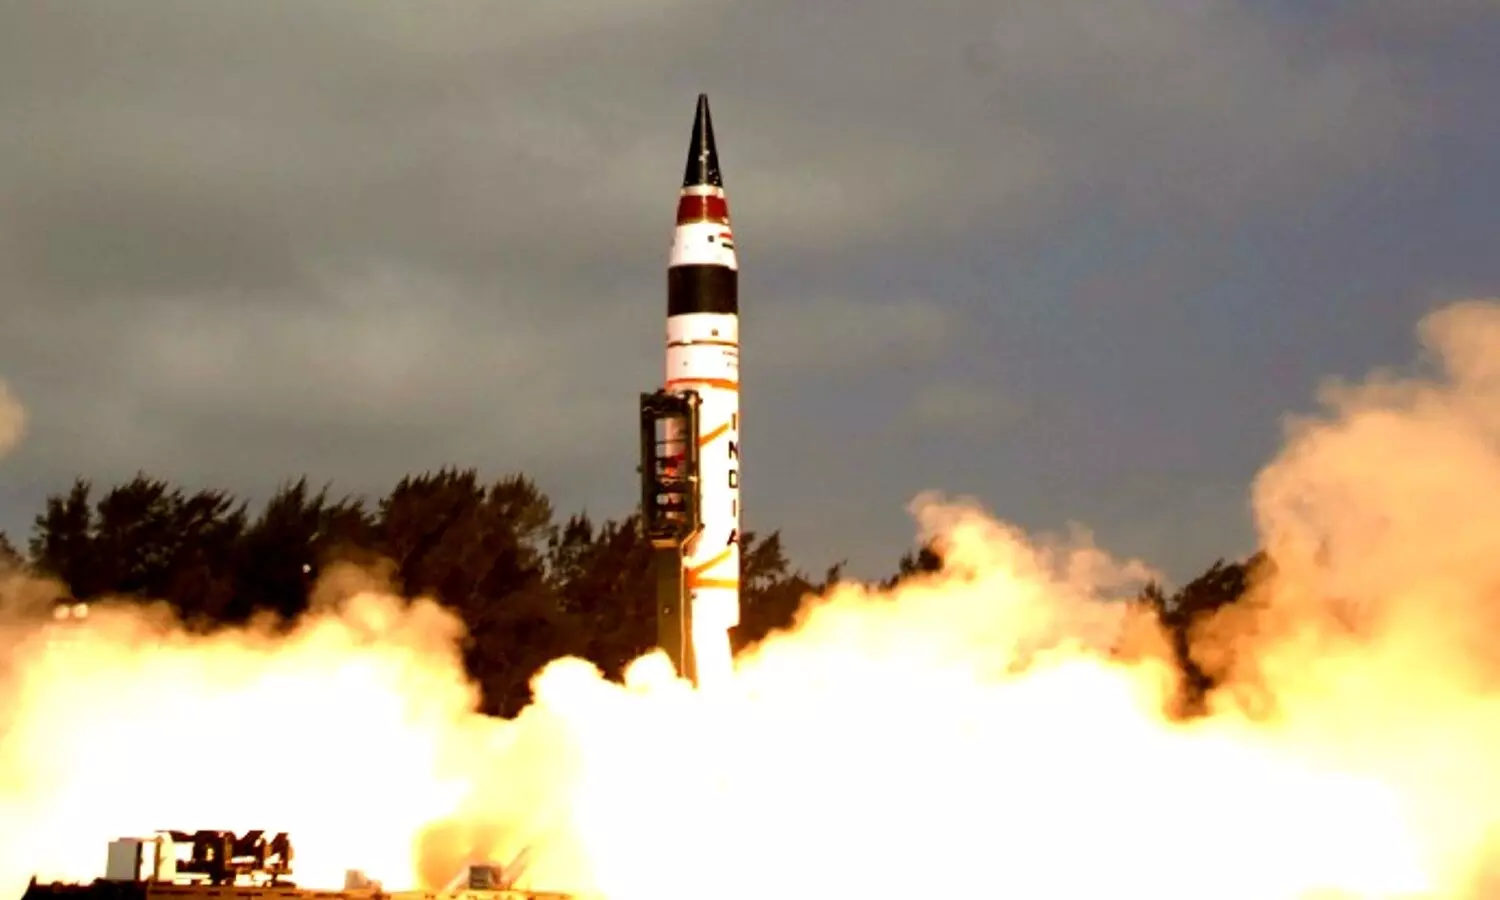 Bharat ki Damdaar Missile : भारत की दमदार मिसाइल से सेकेंडों में चूर-चूर होंगे दुश्मन, अब कांप उठेंगे साजिश रचने वाले